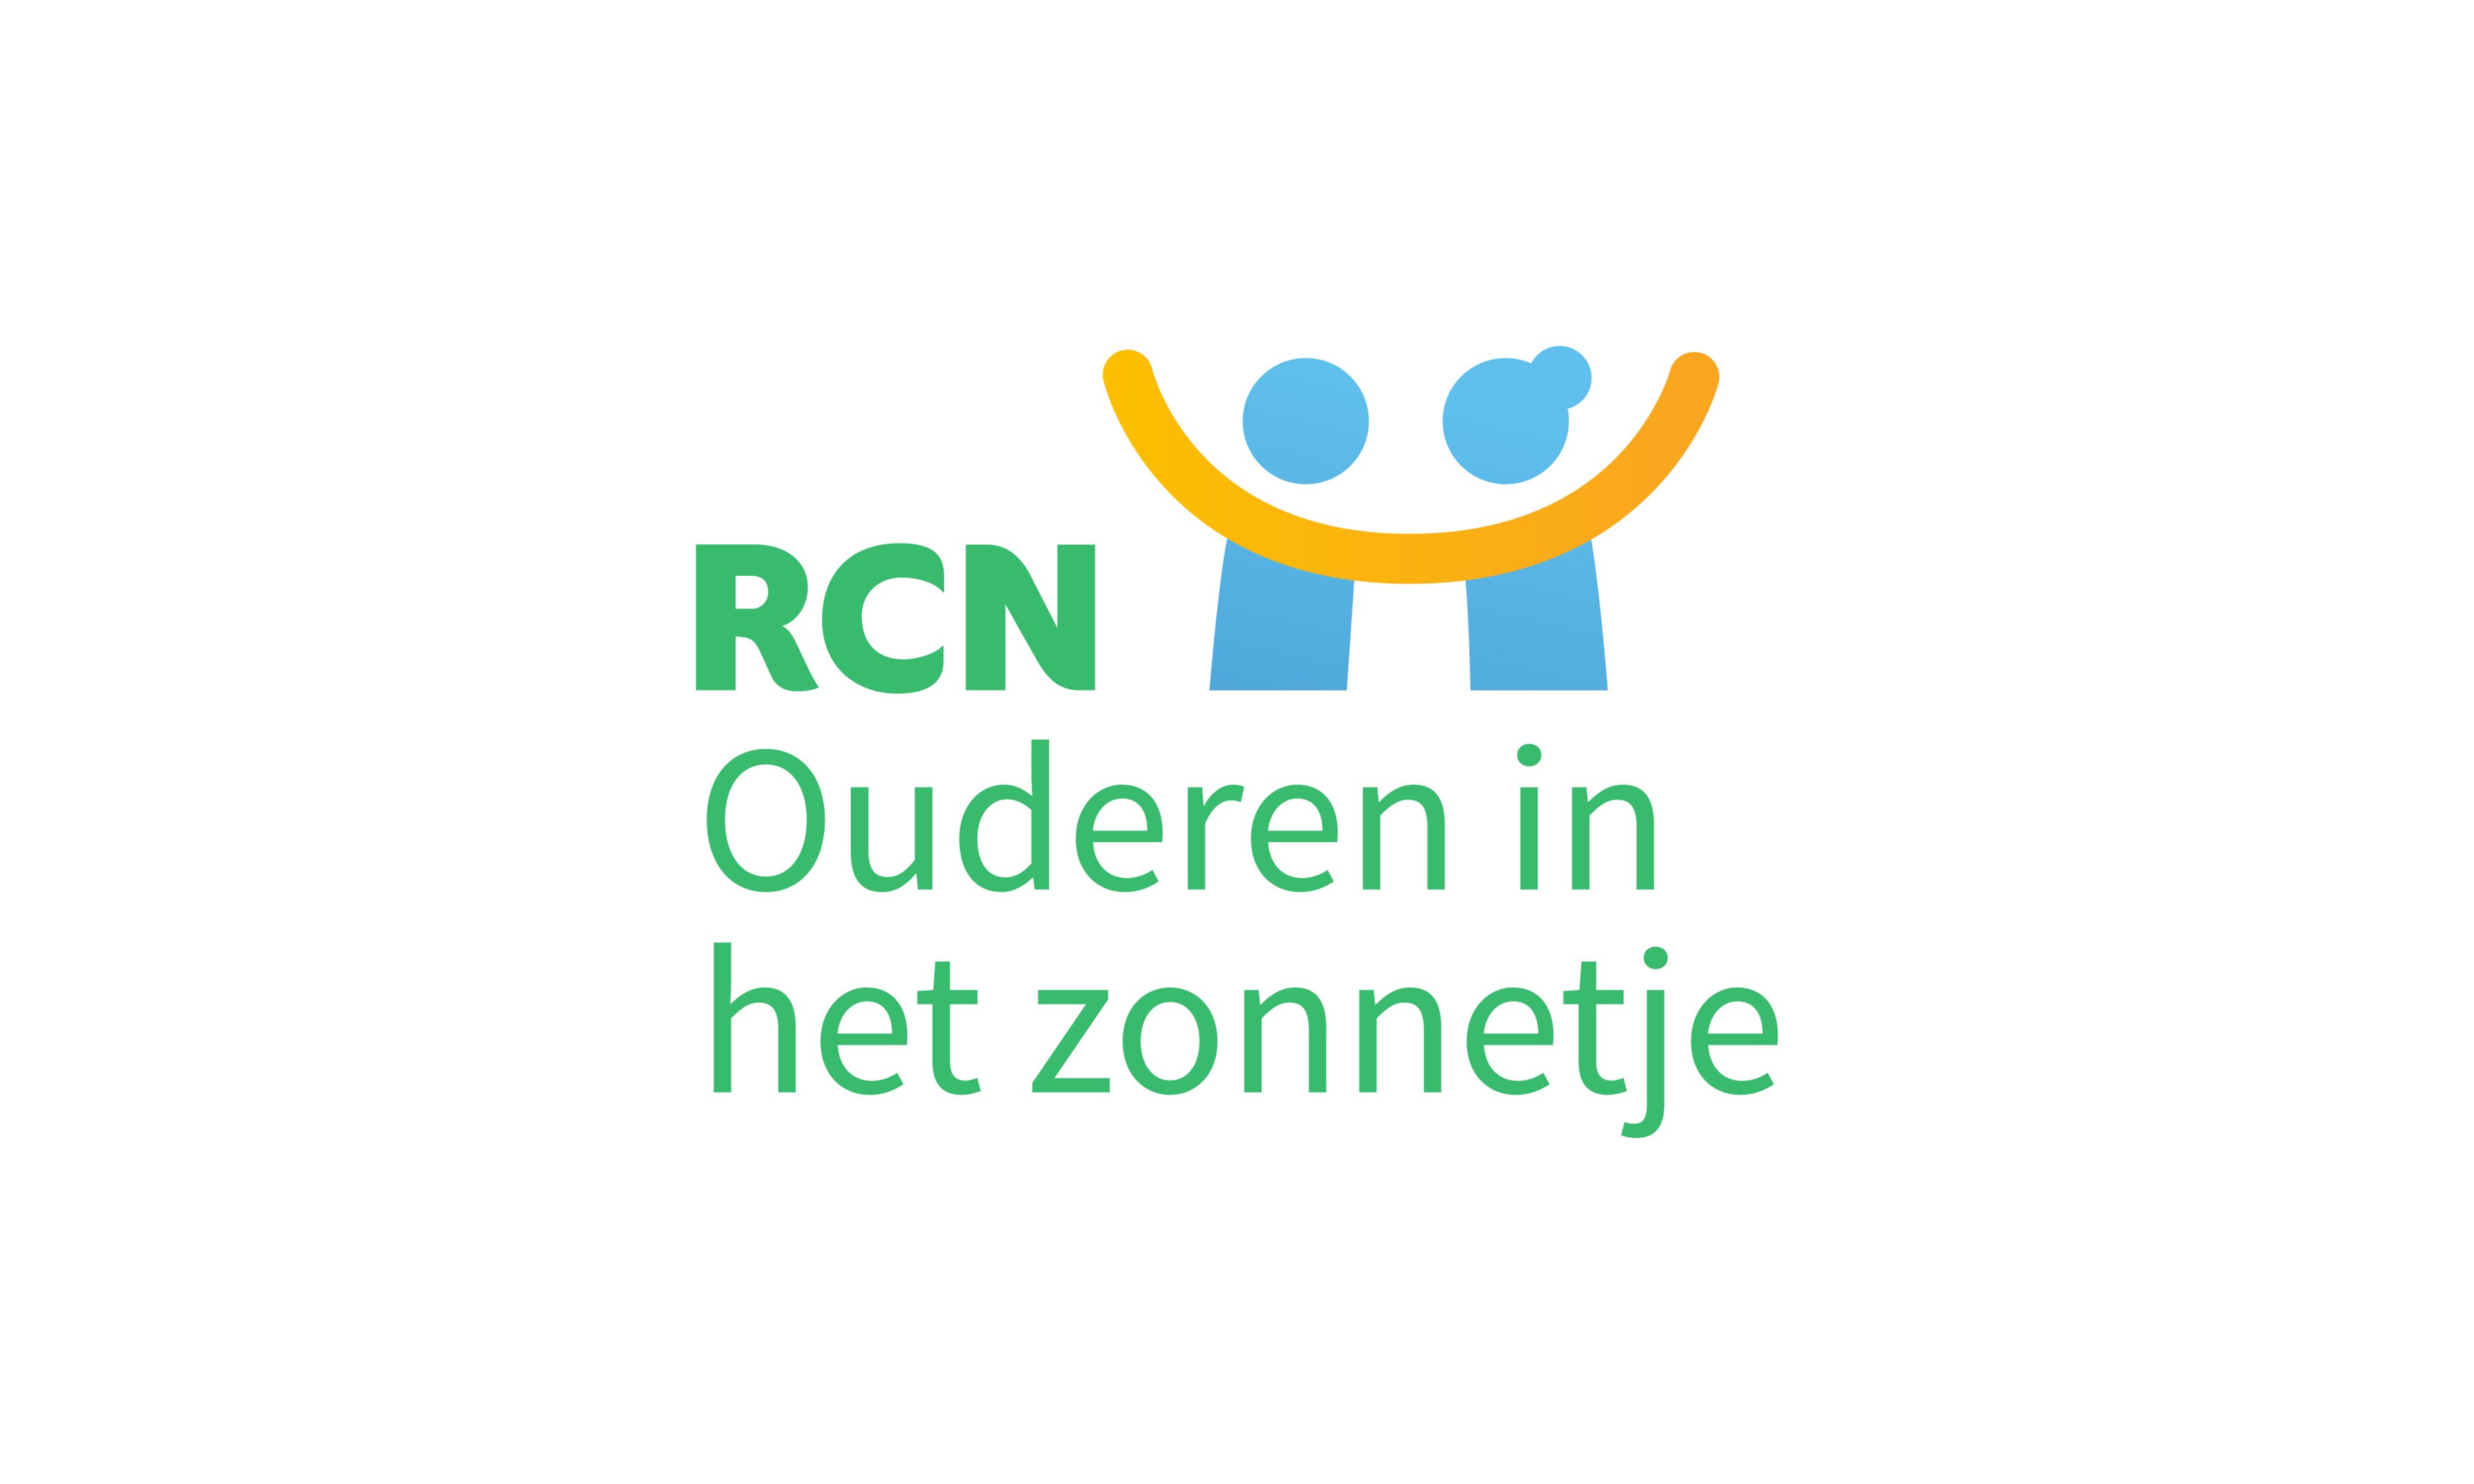 RCN_brandassets_additionallogo's_Ouderenintzonnetje_RGB_NL-01